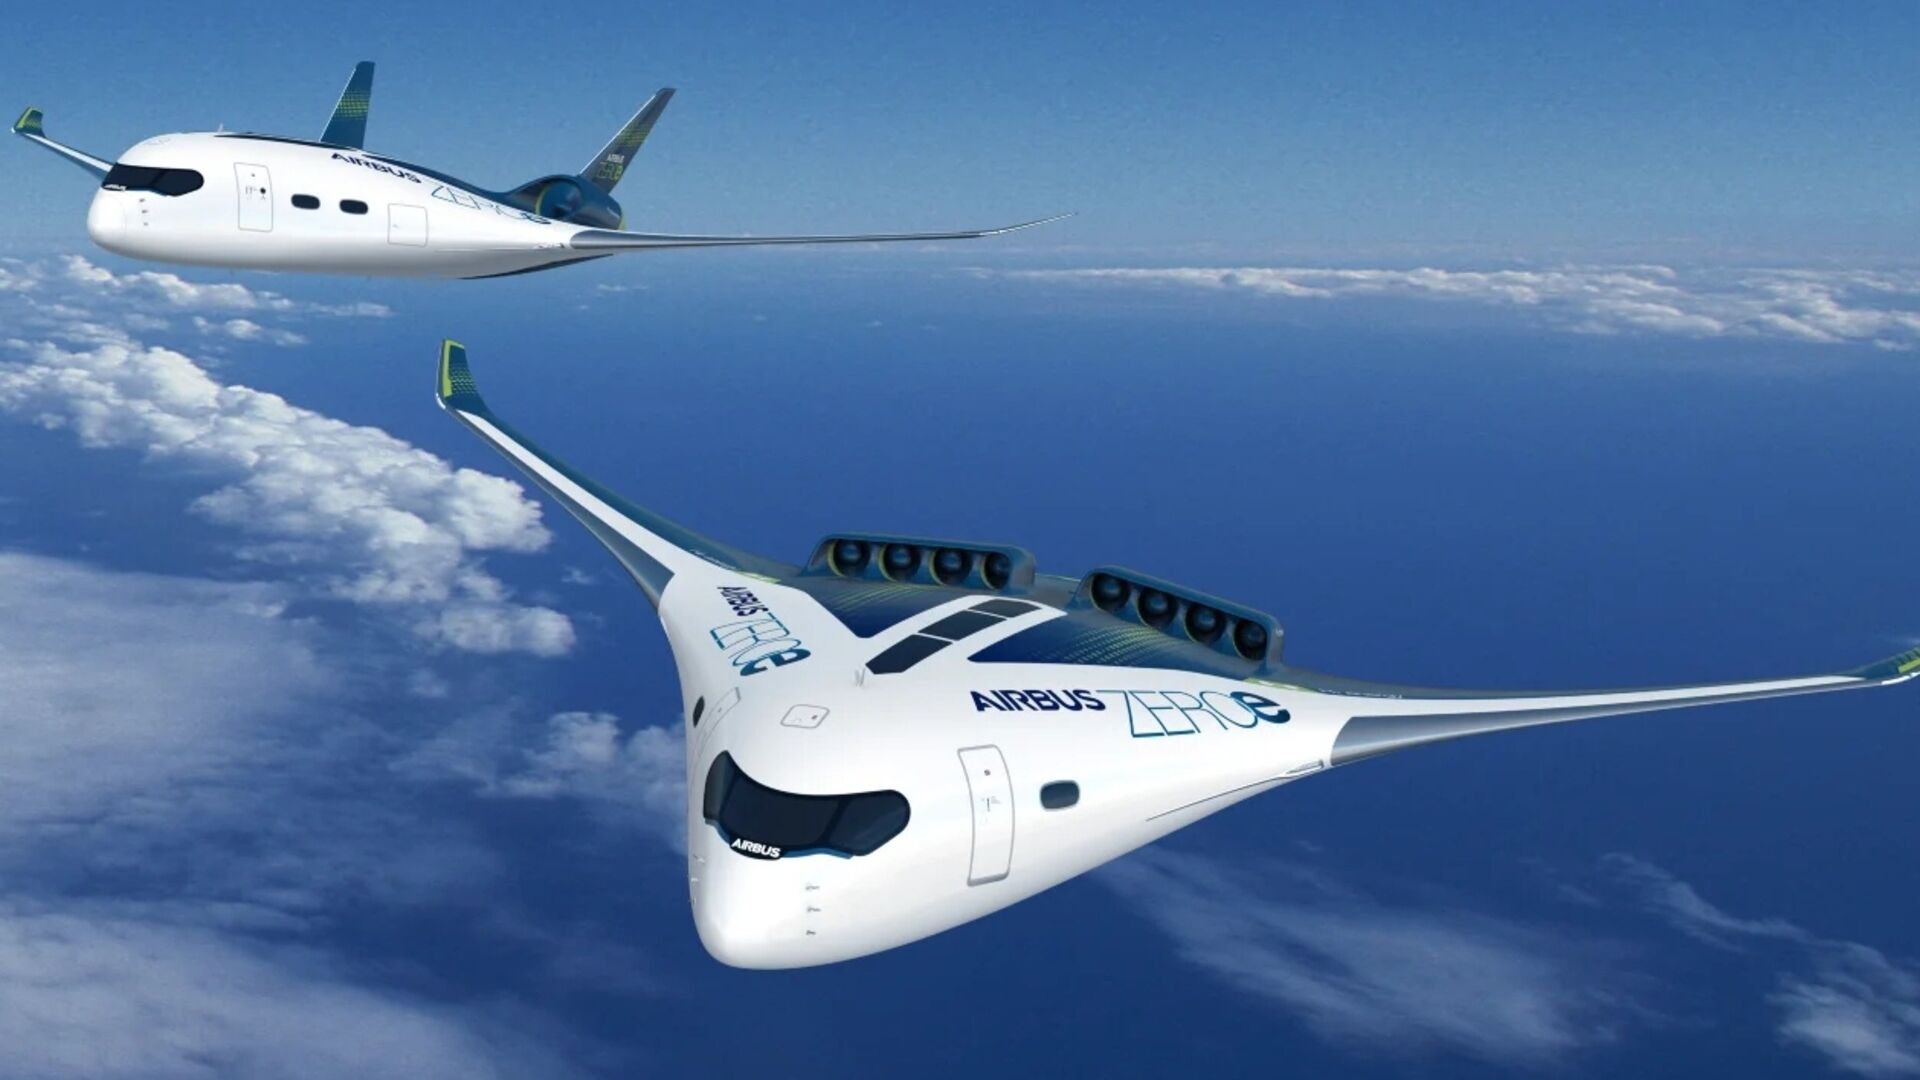 Kebisingan: proyek ZEROe dari perusahaan Airbus adalah salah satu pesawat sayap campuran yang diusulkan dalam beberapa tahun terakhir dan menjadi subjek penelitian